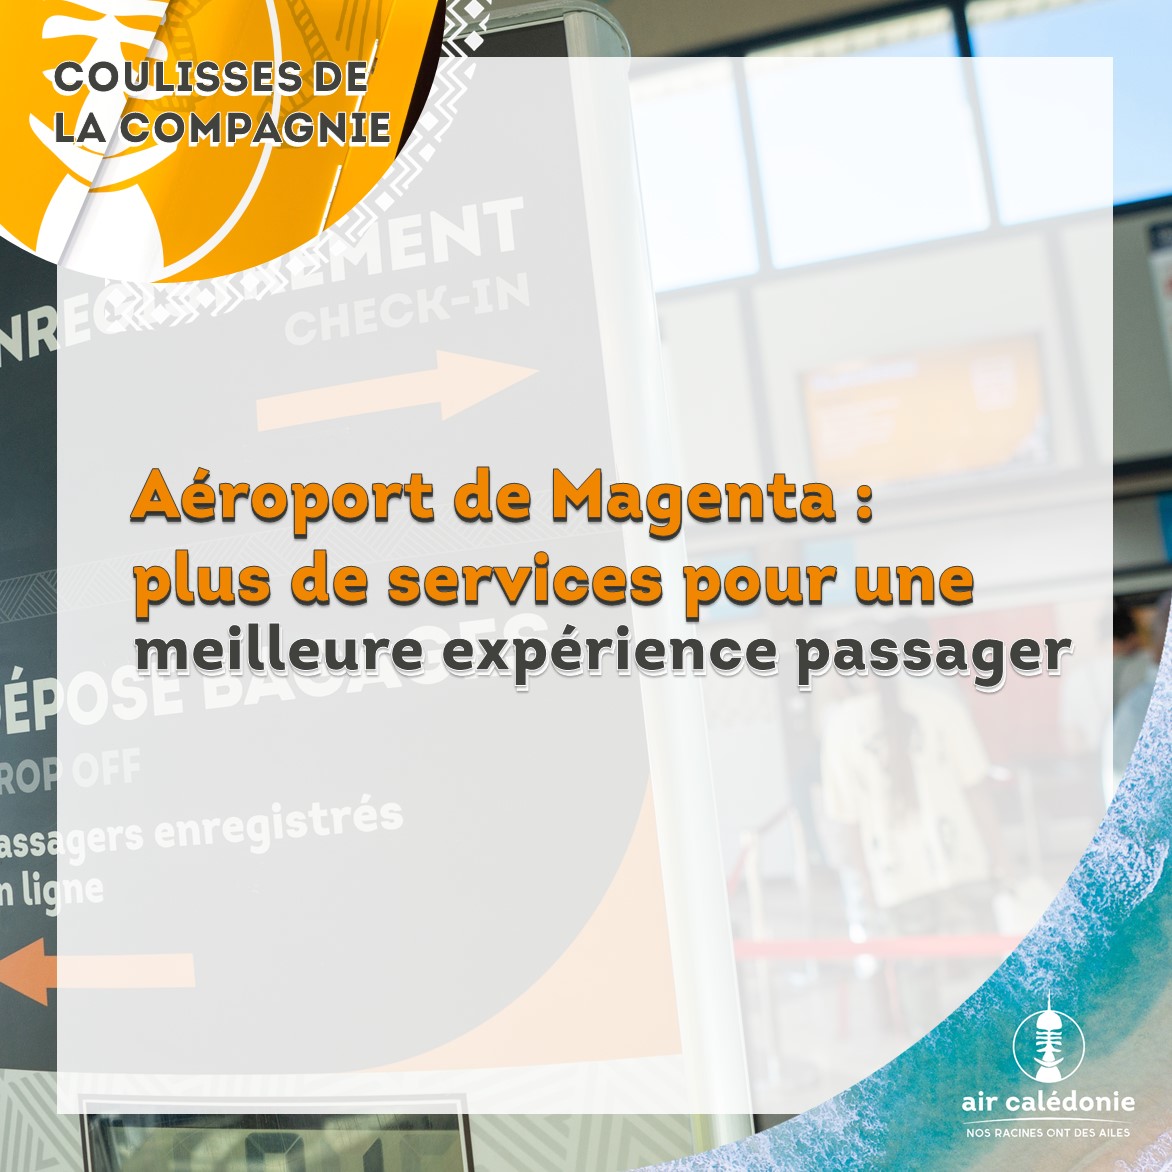 Amélioration des services à l'aéroport de Magenta